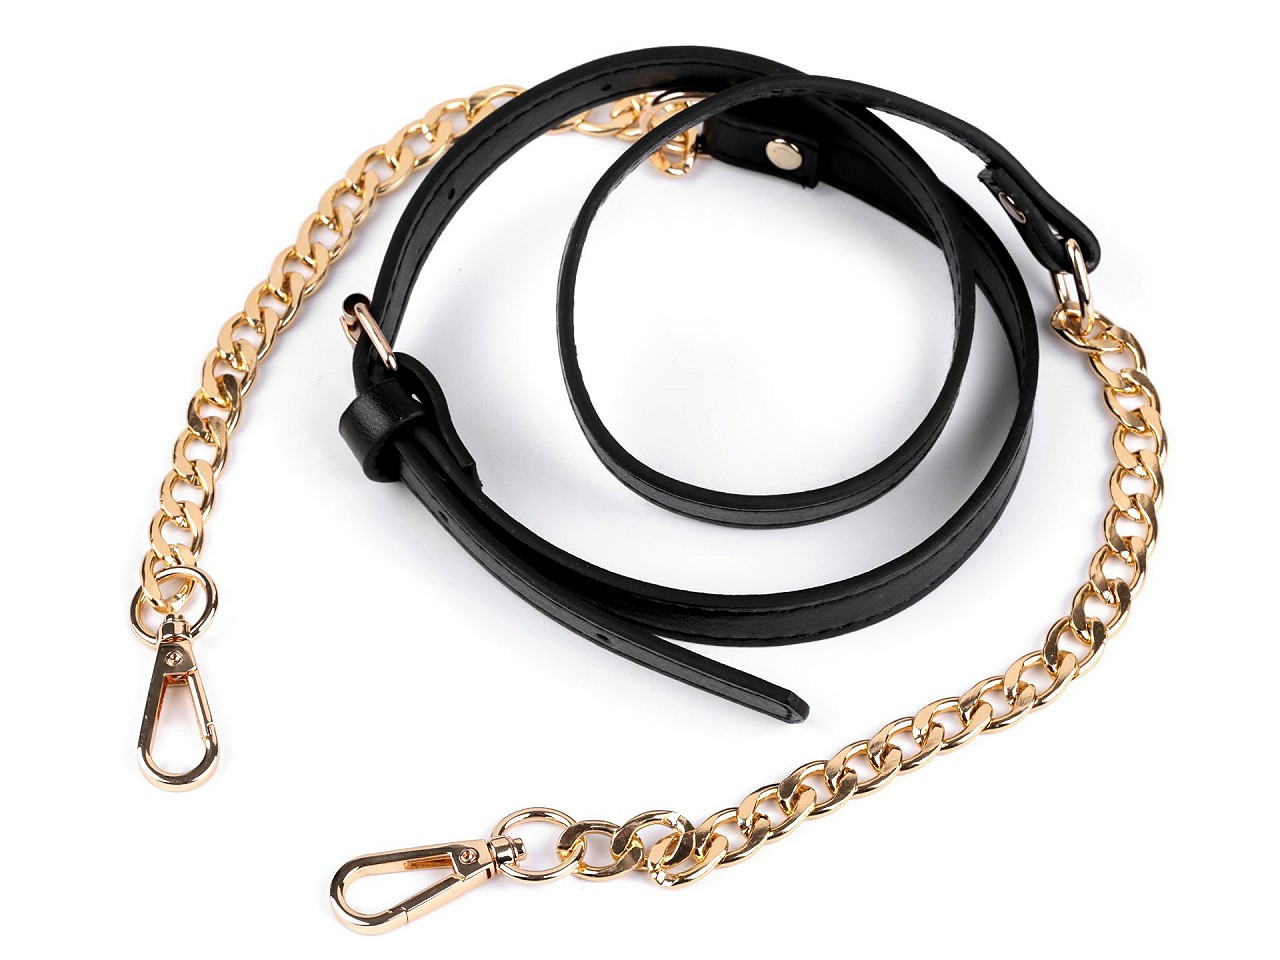 Koženkový popruh / ucho na kabelku s řetízkem a karabinami šíře 1,5 cm, barva 2 černá zlatá